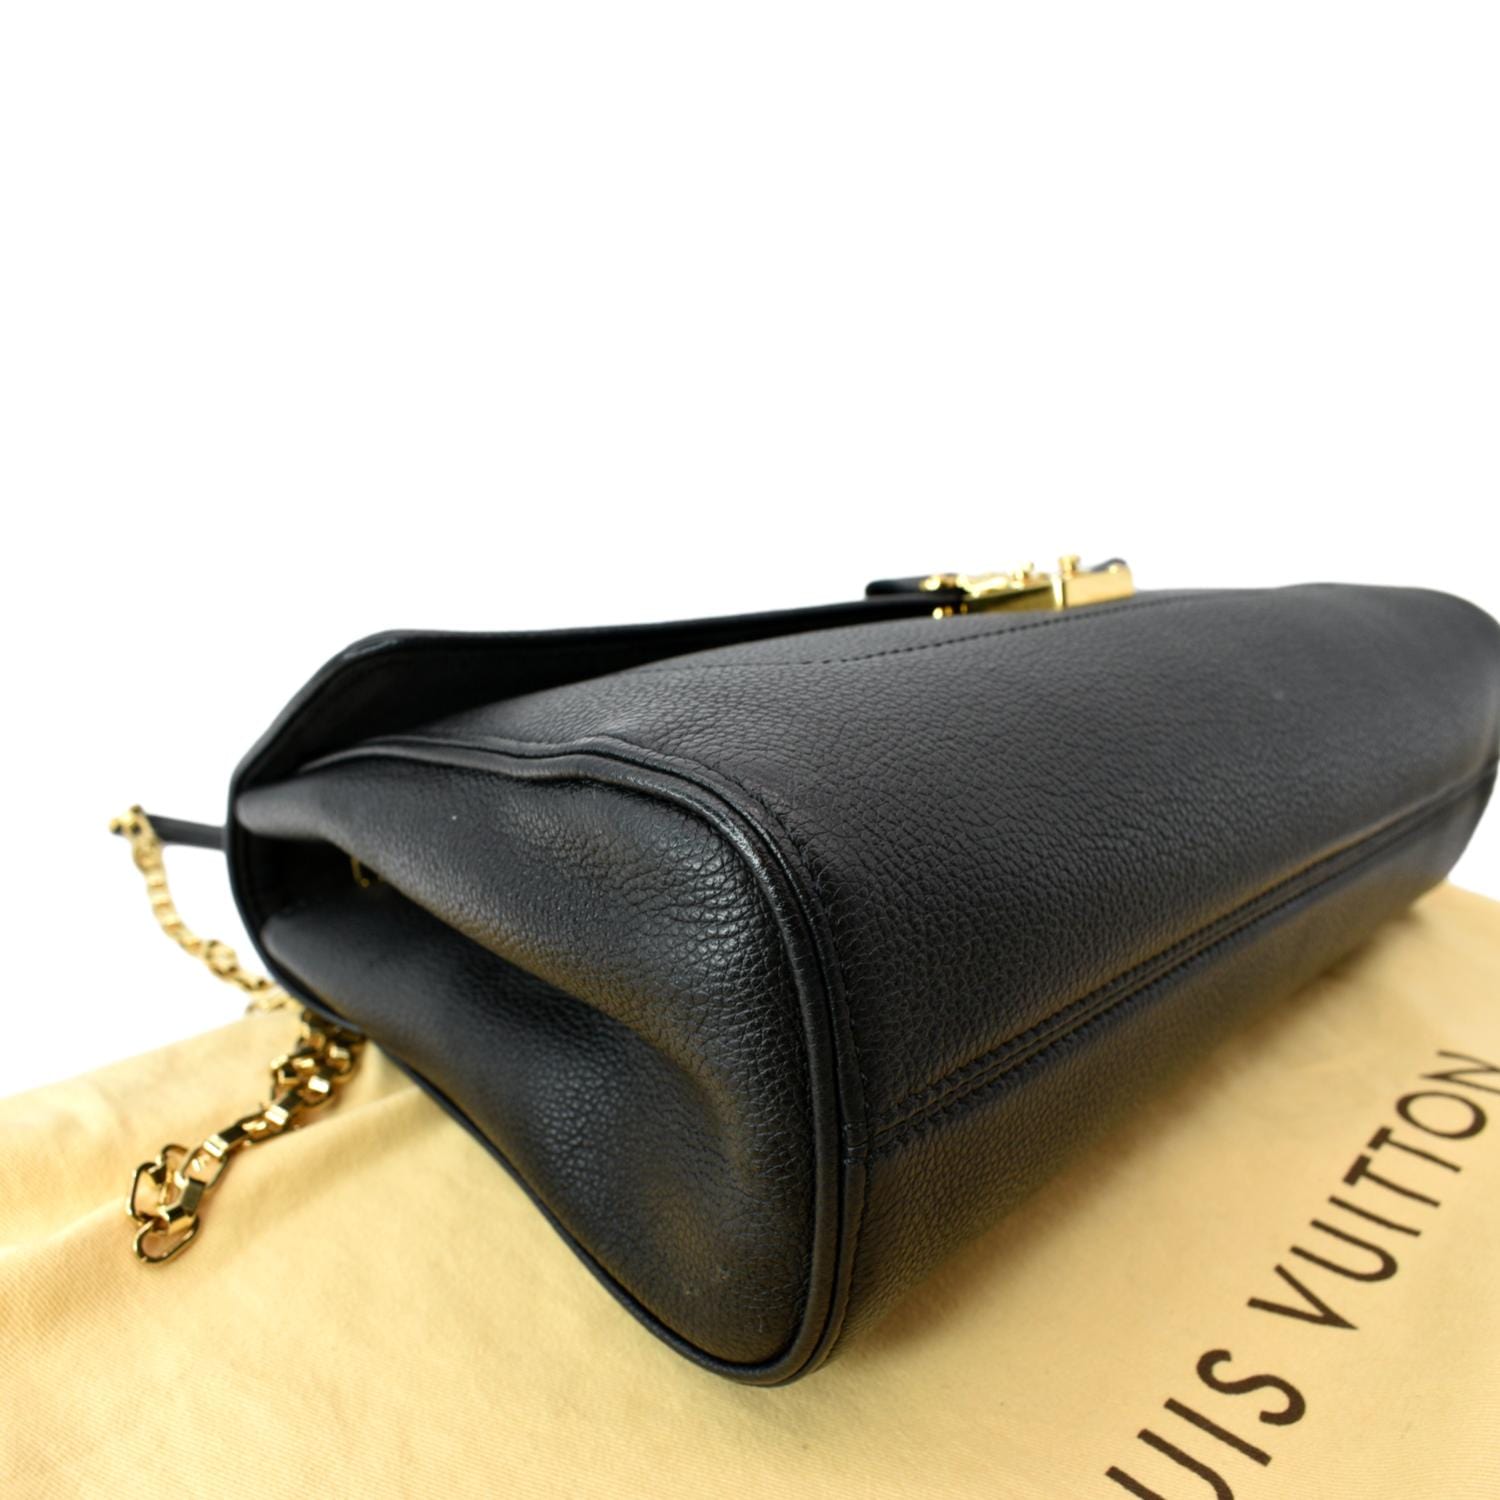 Louis Vuitton M48948 Saint-germain Pm Shoulder Bag Monogram Empreinte  Leather